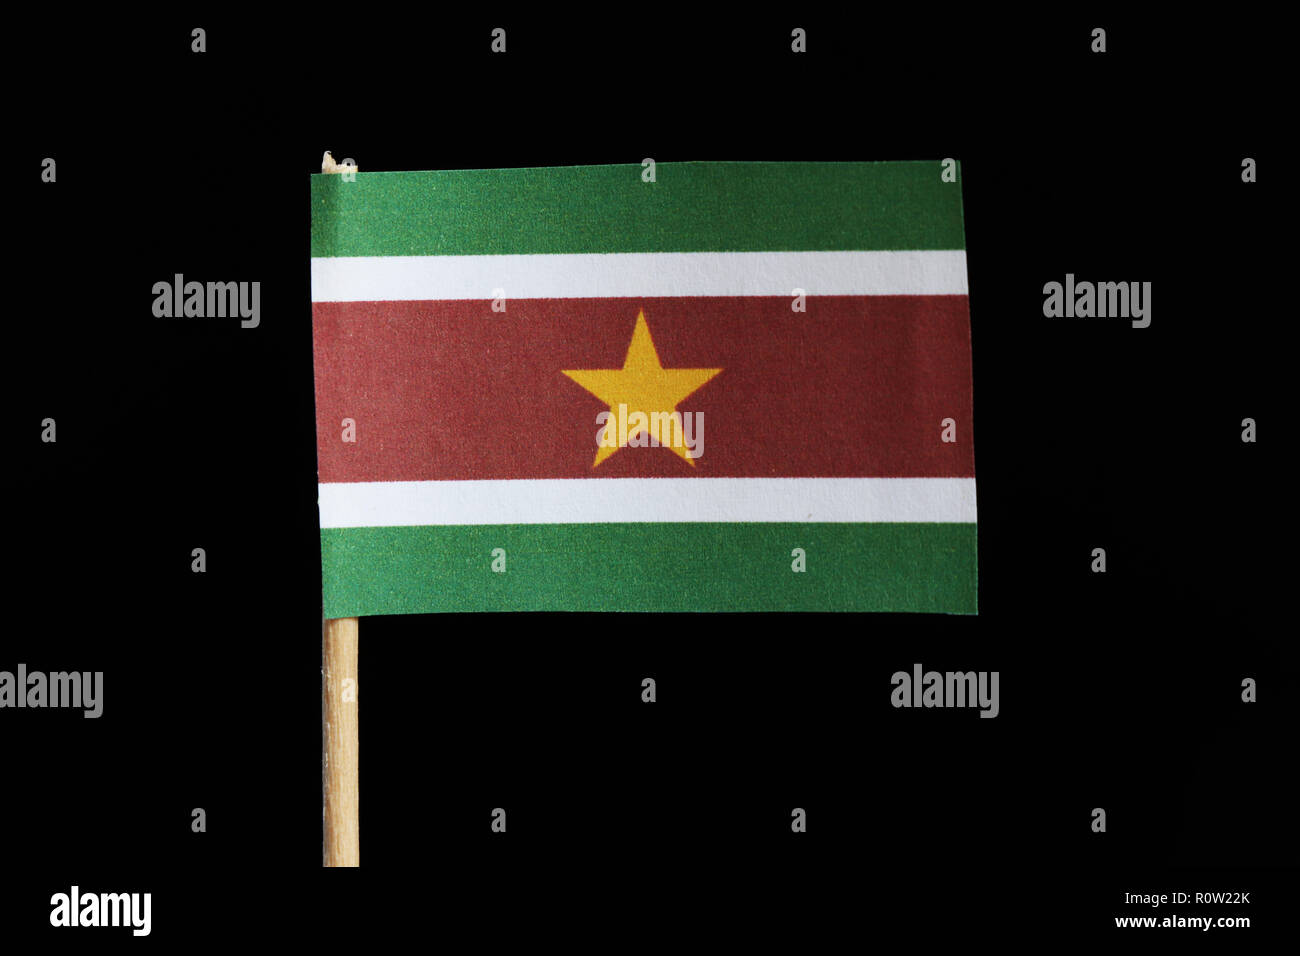 Un drapeau officiel du Suriname pour cure-dents sur fond noir. Un trait horizontal de triband vert et rouge avec une grande bordure blanche avec la grande étoile jaune Banque D'Images